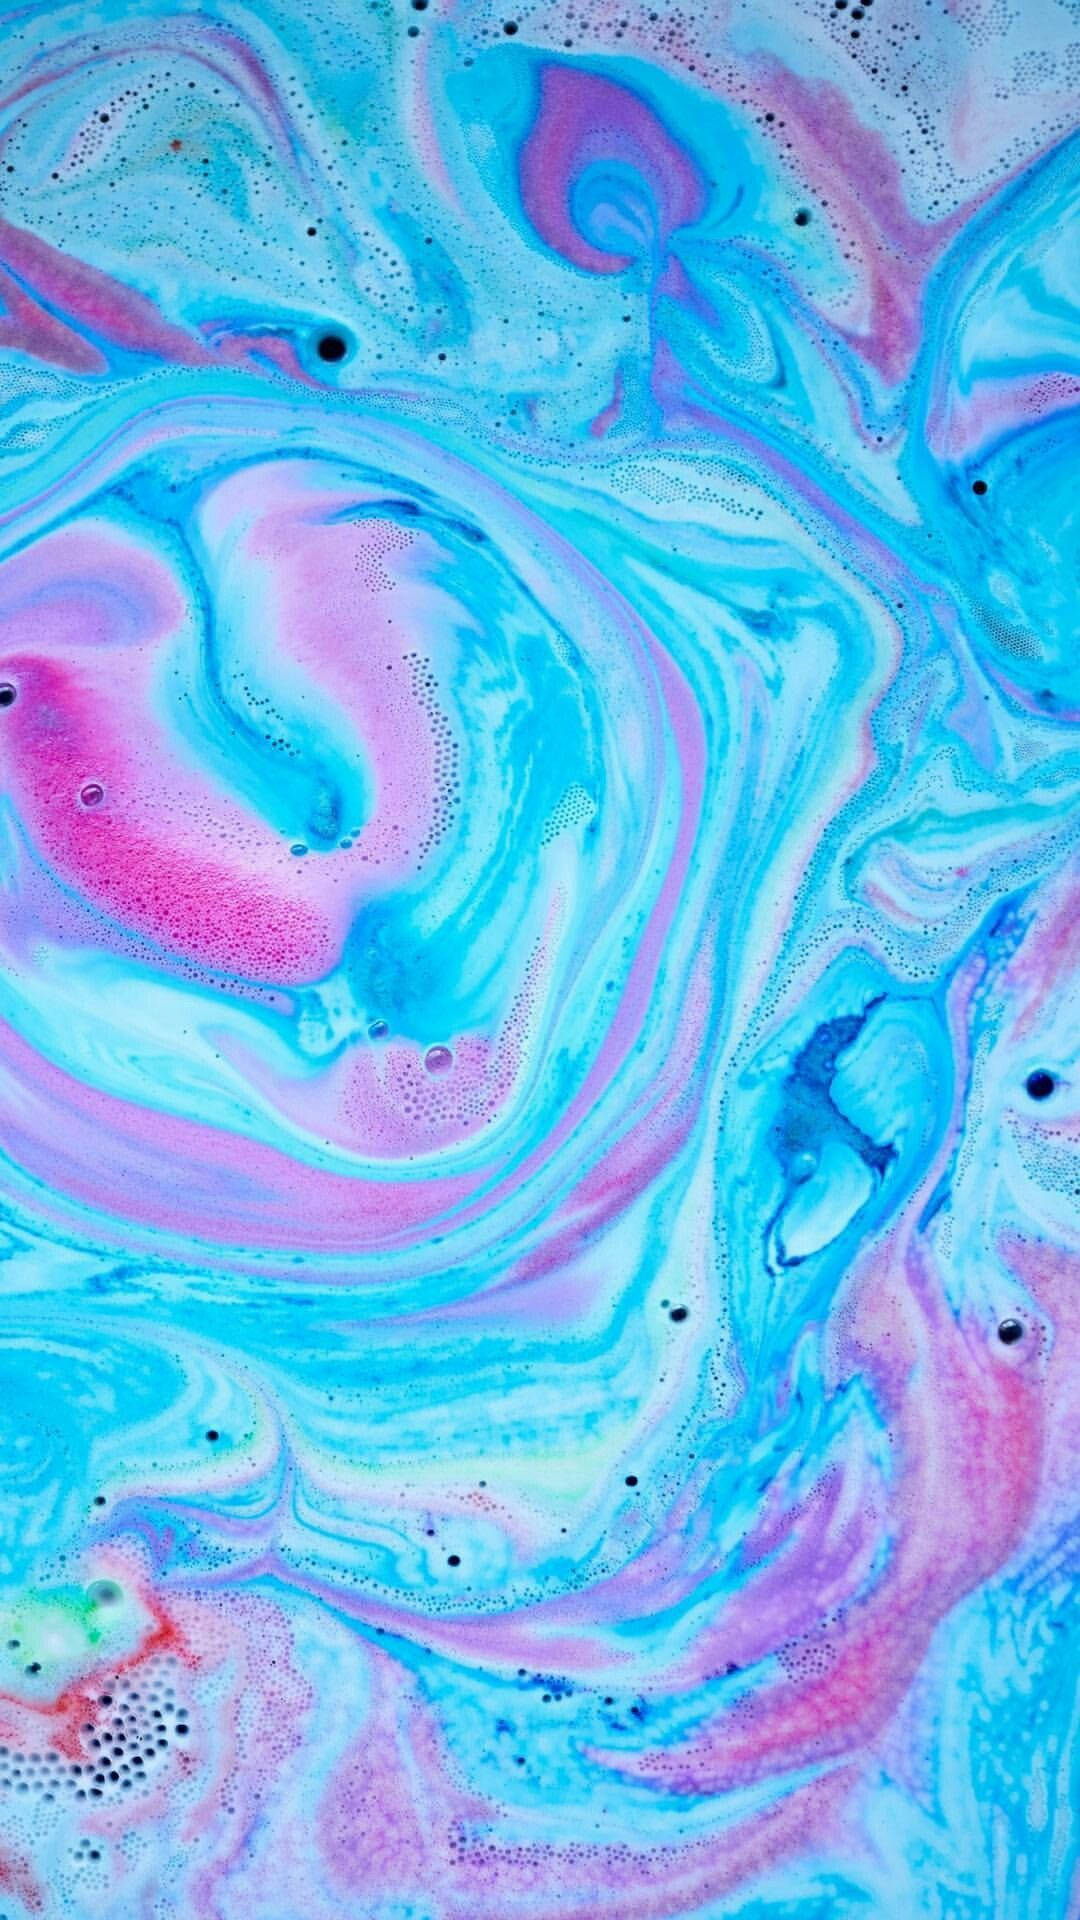 Lush Psychedelic Liquid Mixture Wallpaper